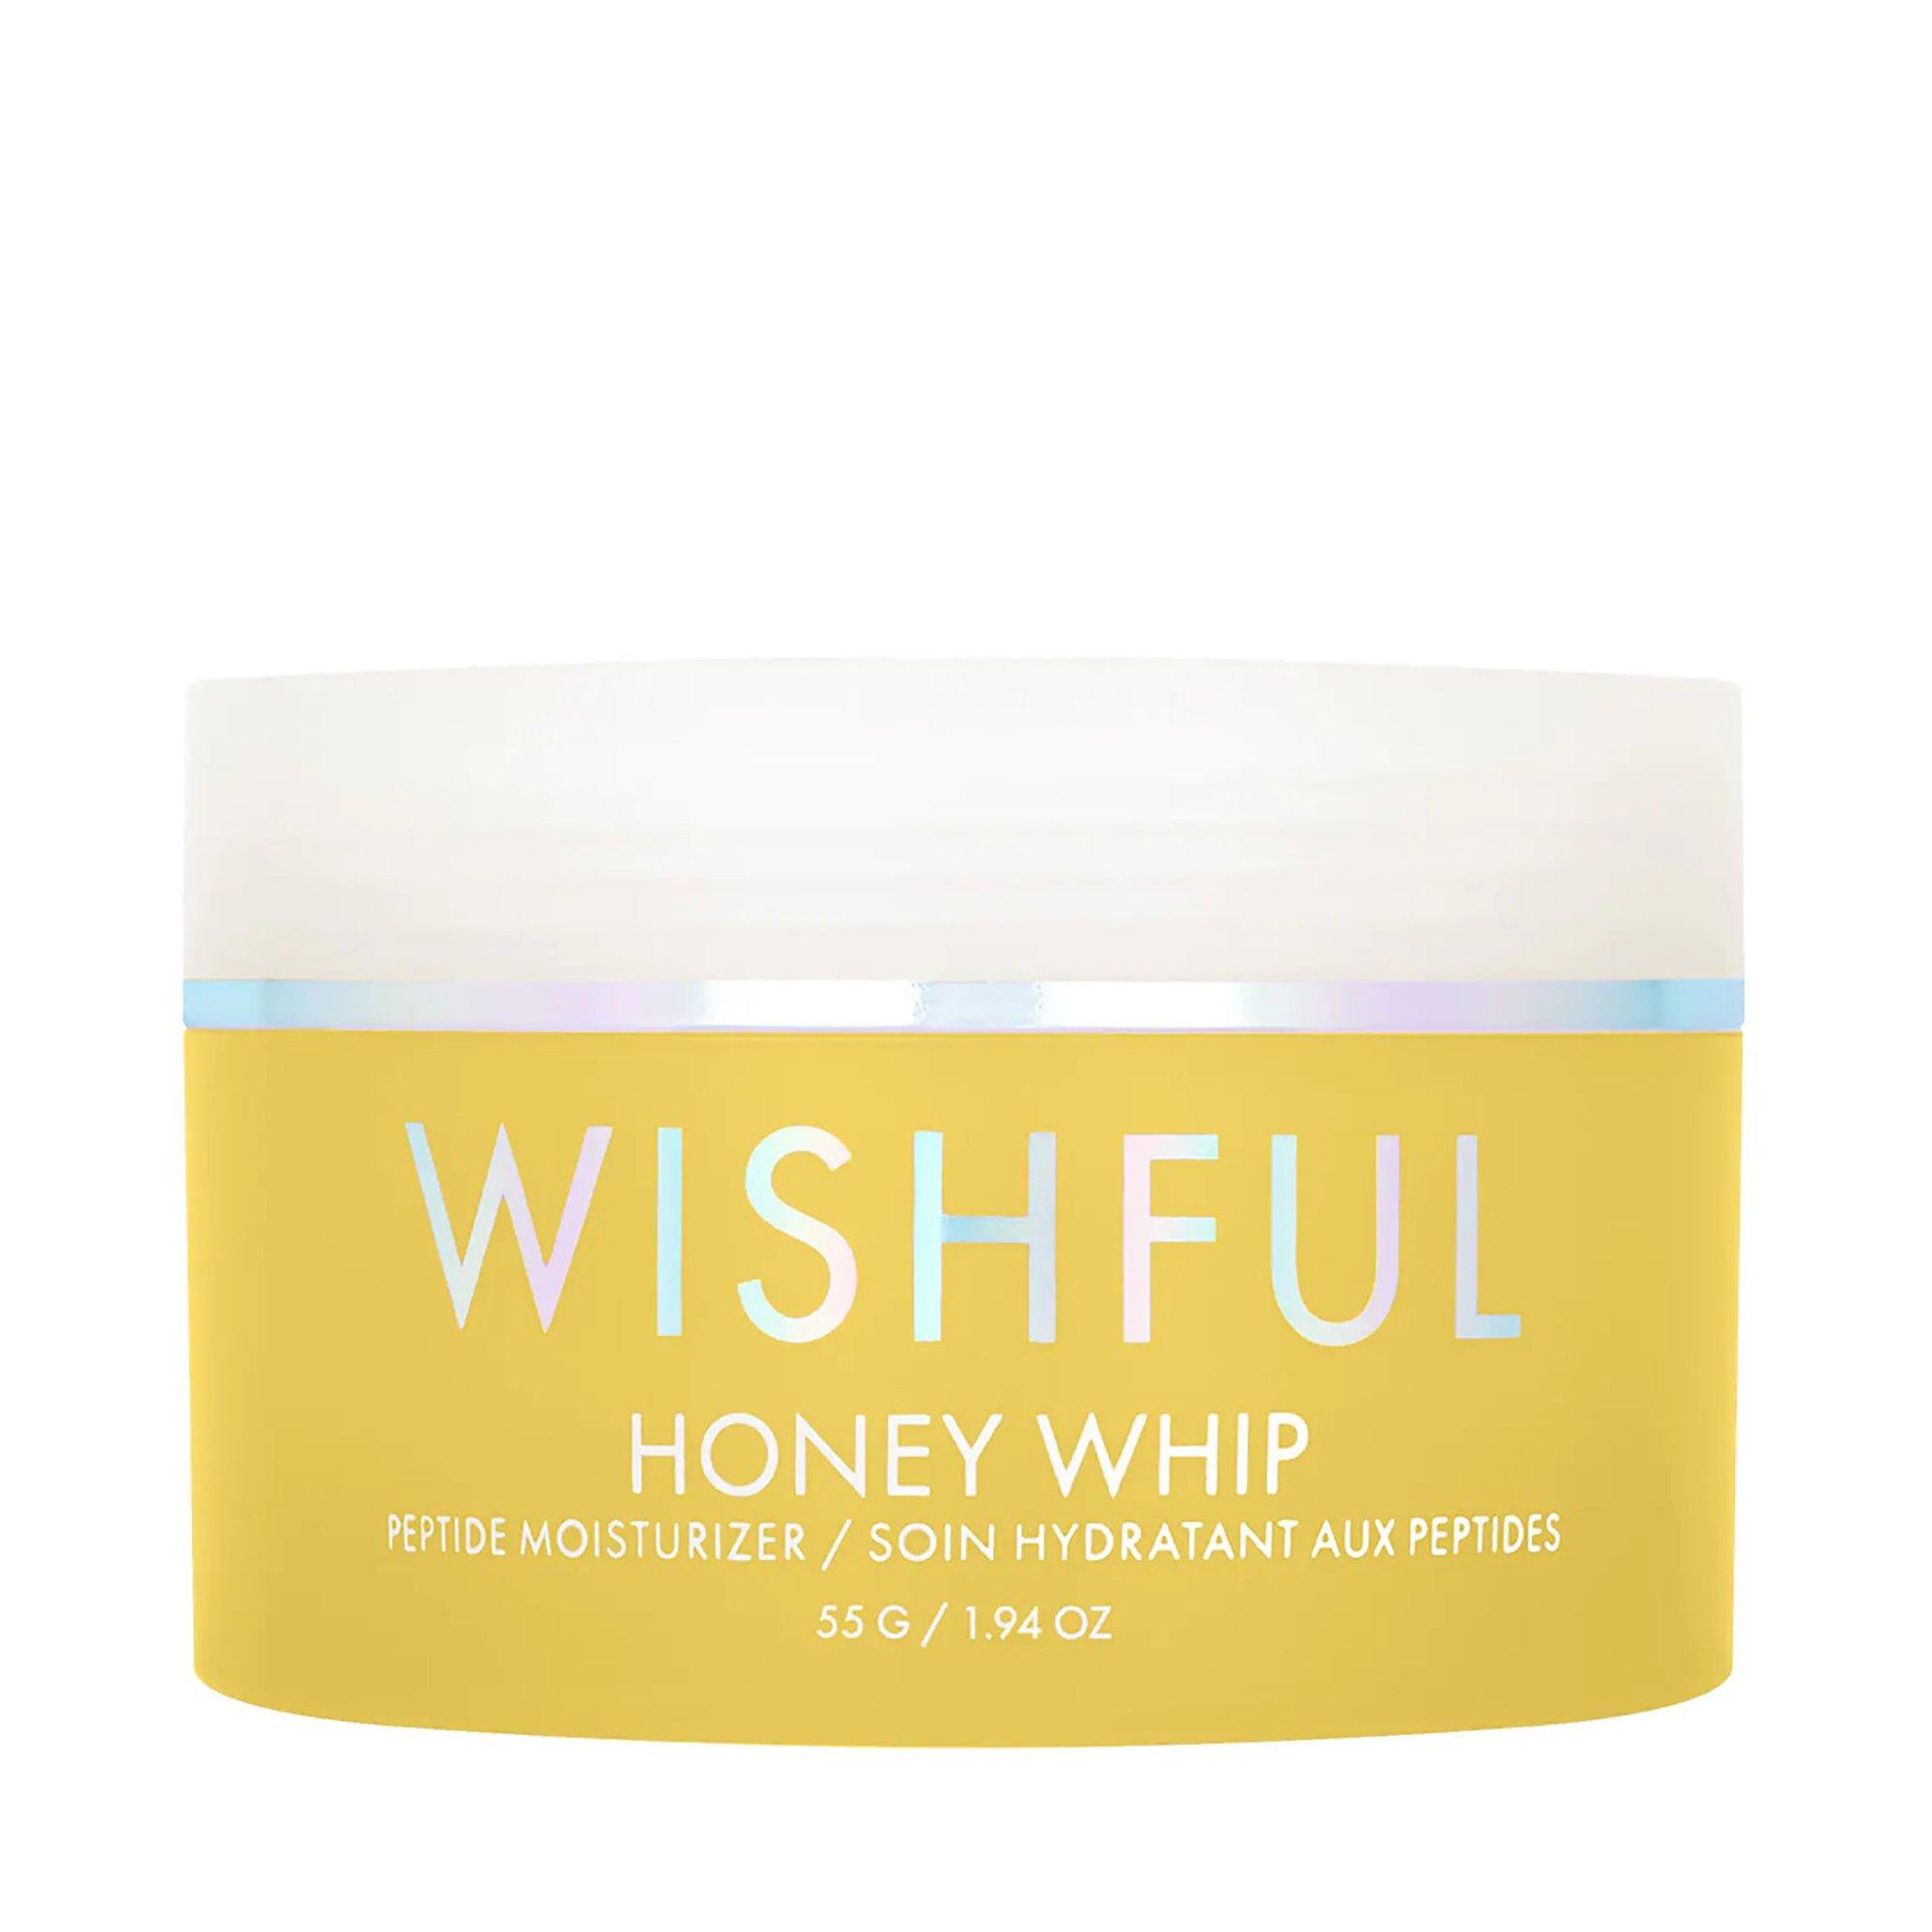 Image of Wishful Honey Whip Creme Moisturizer - 55g